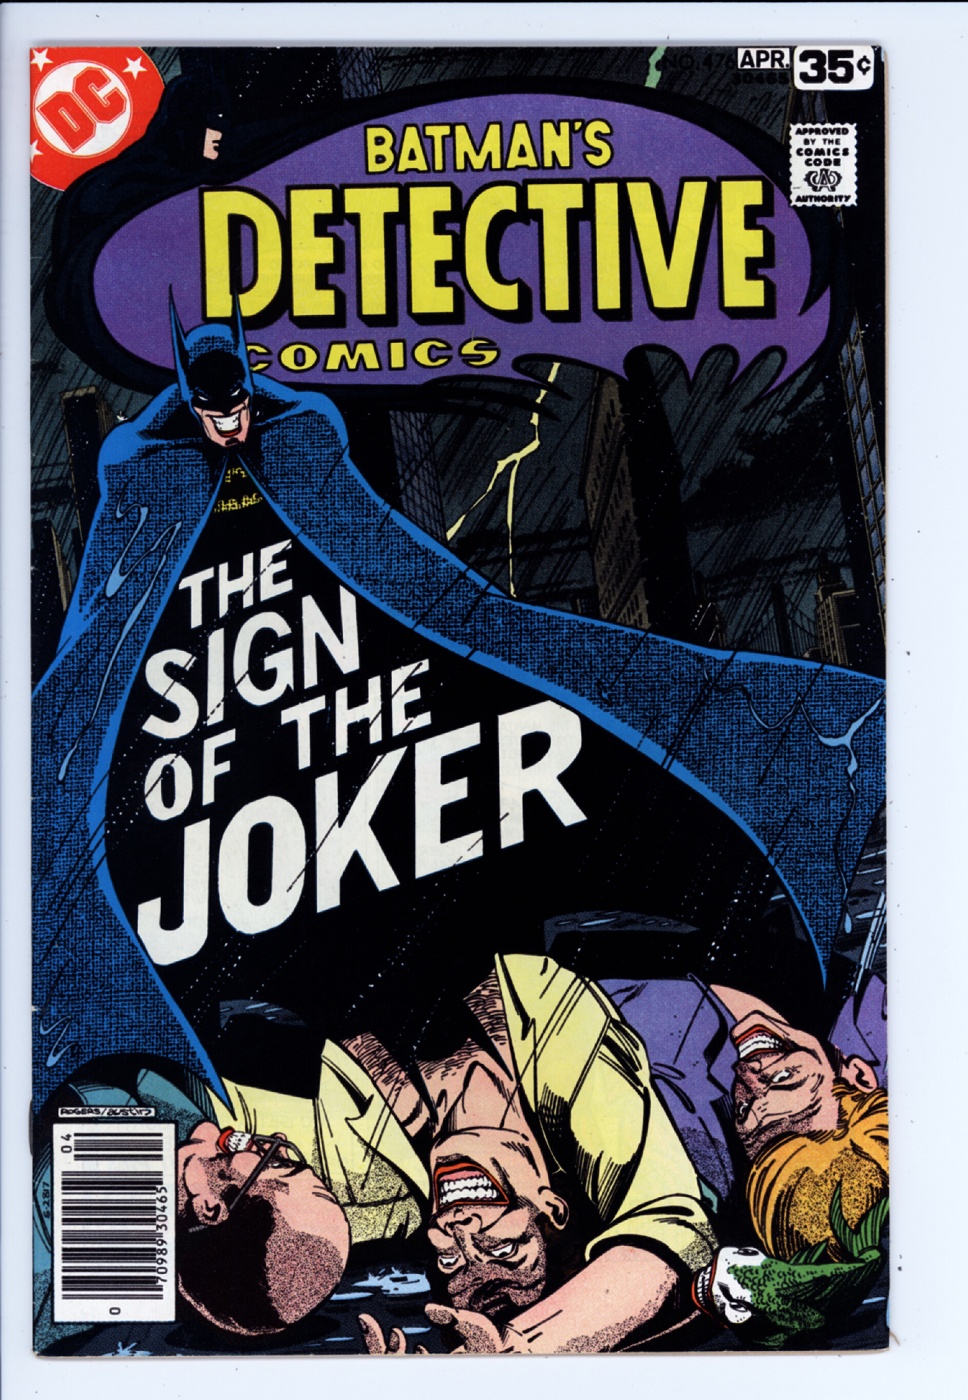 DC Detective Comics Batman # 570 US TOP